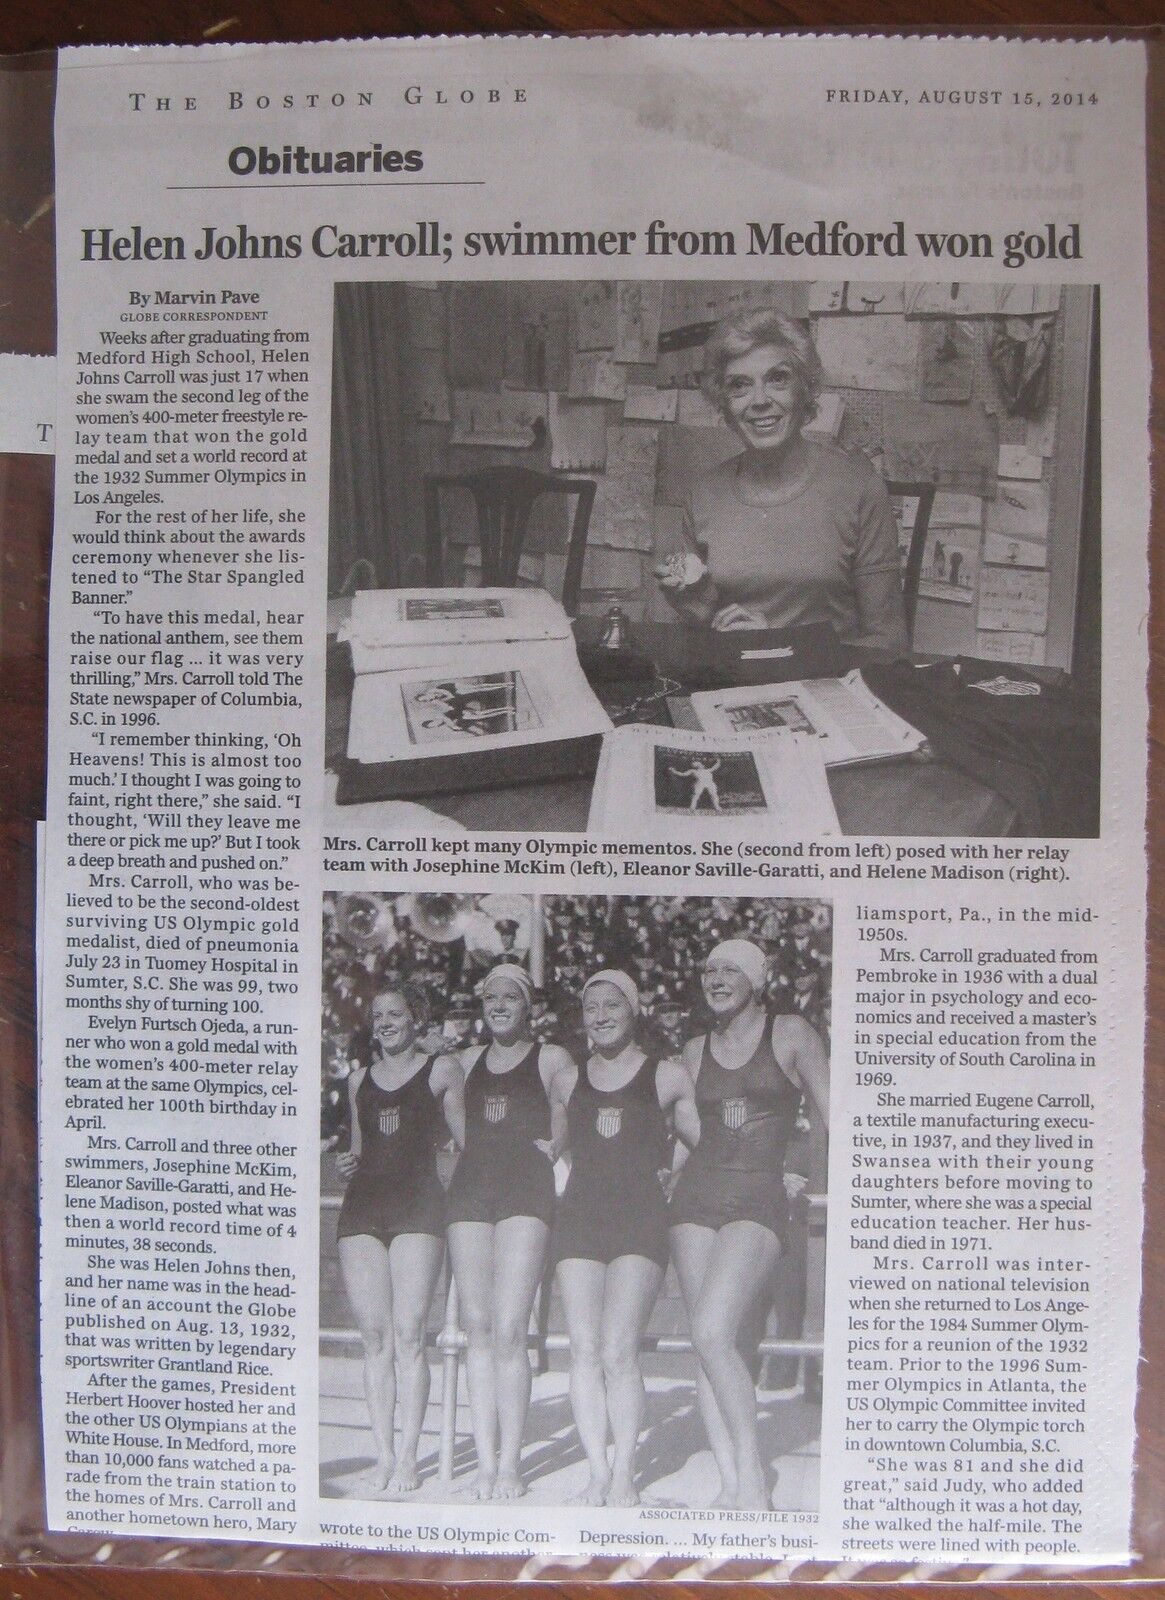 Obituary: Boston Globe 8/15/2014: Helen Johns Carroll Olympic Gold Medal Winner 